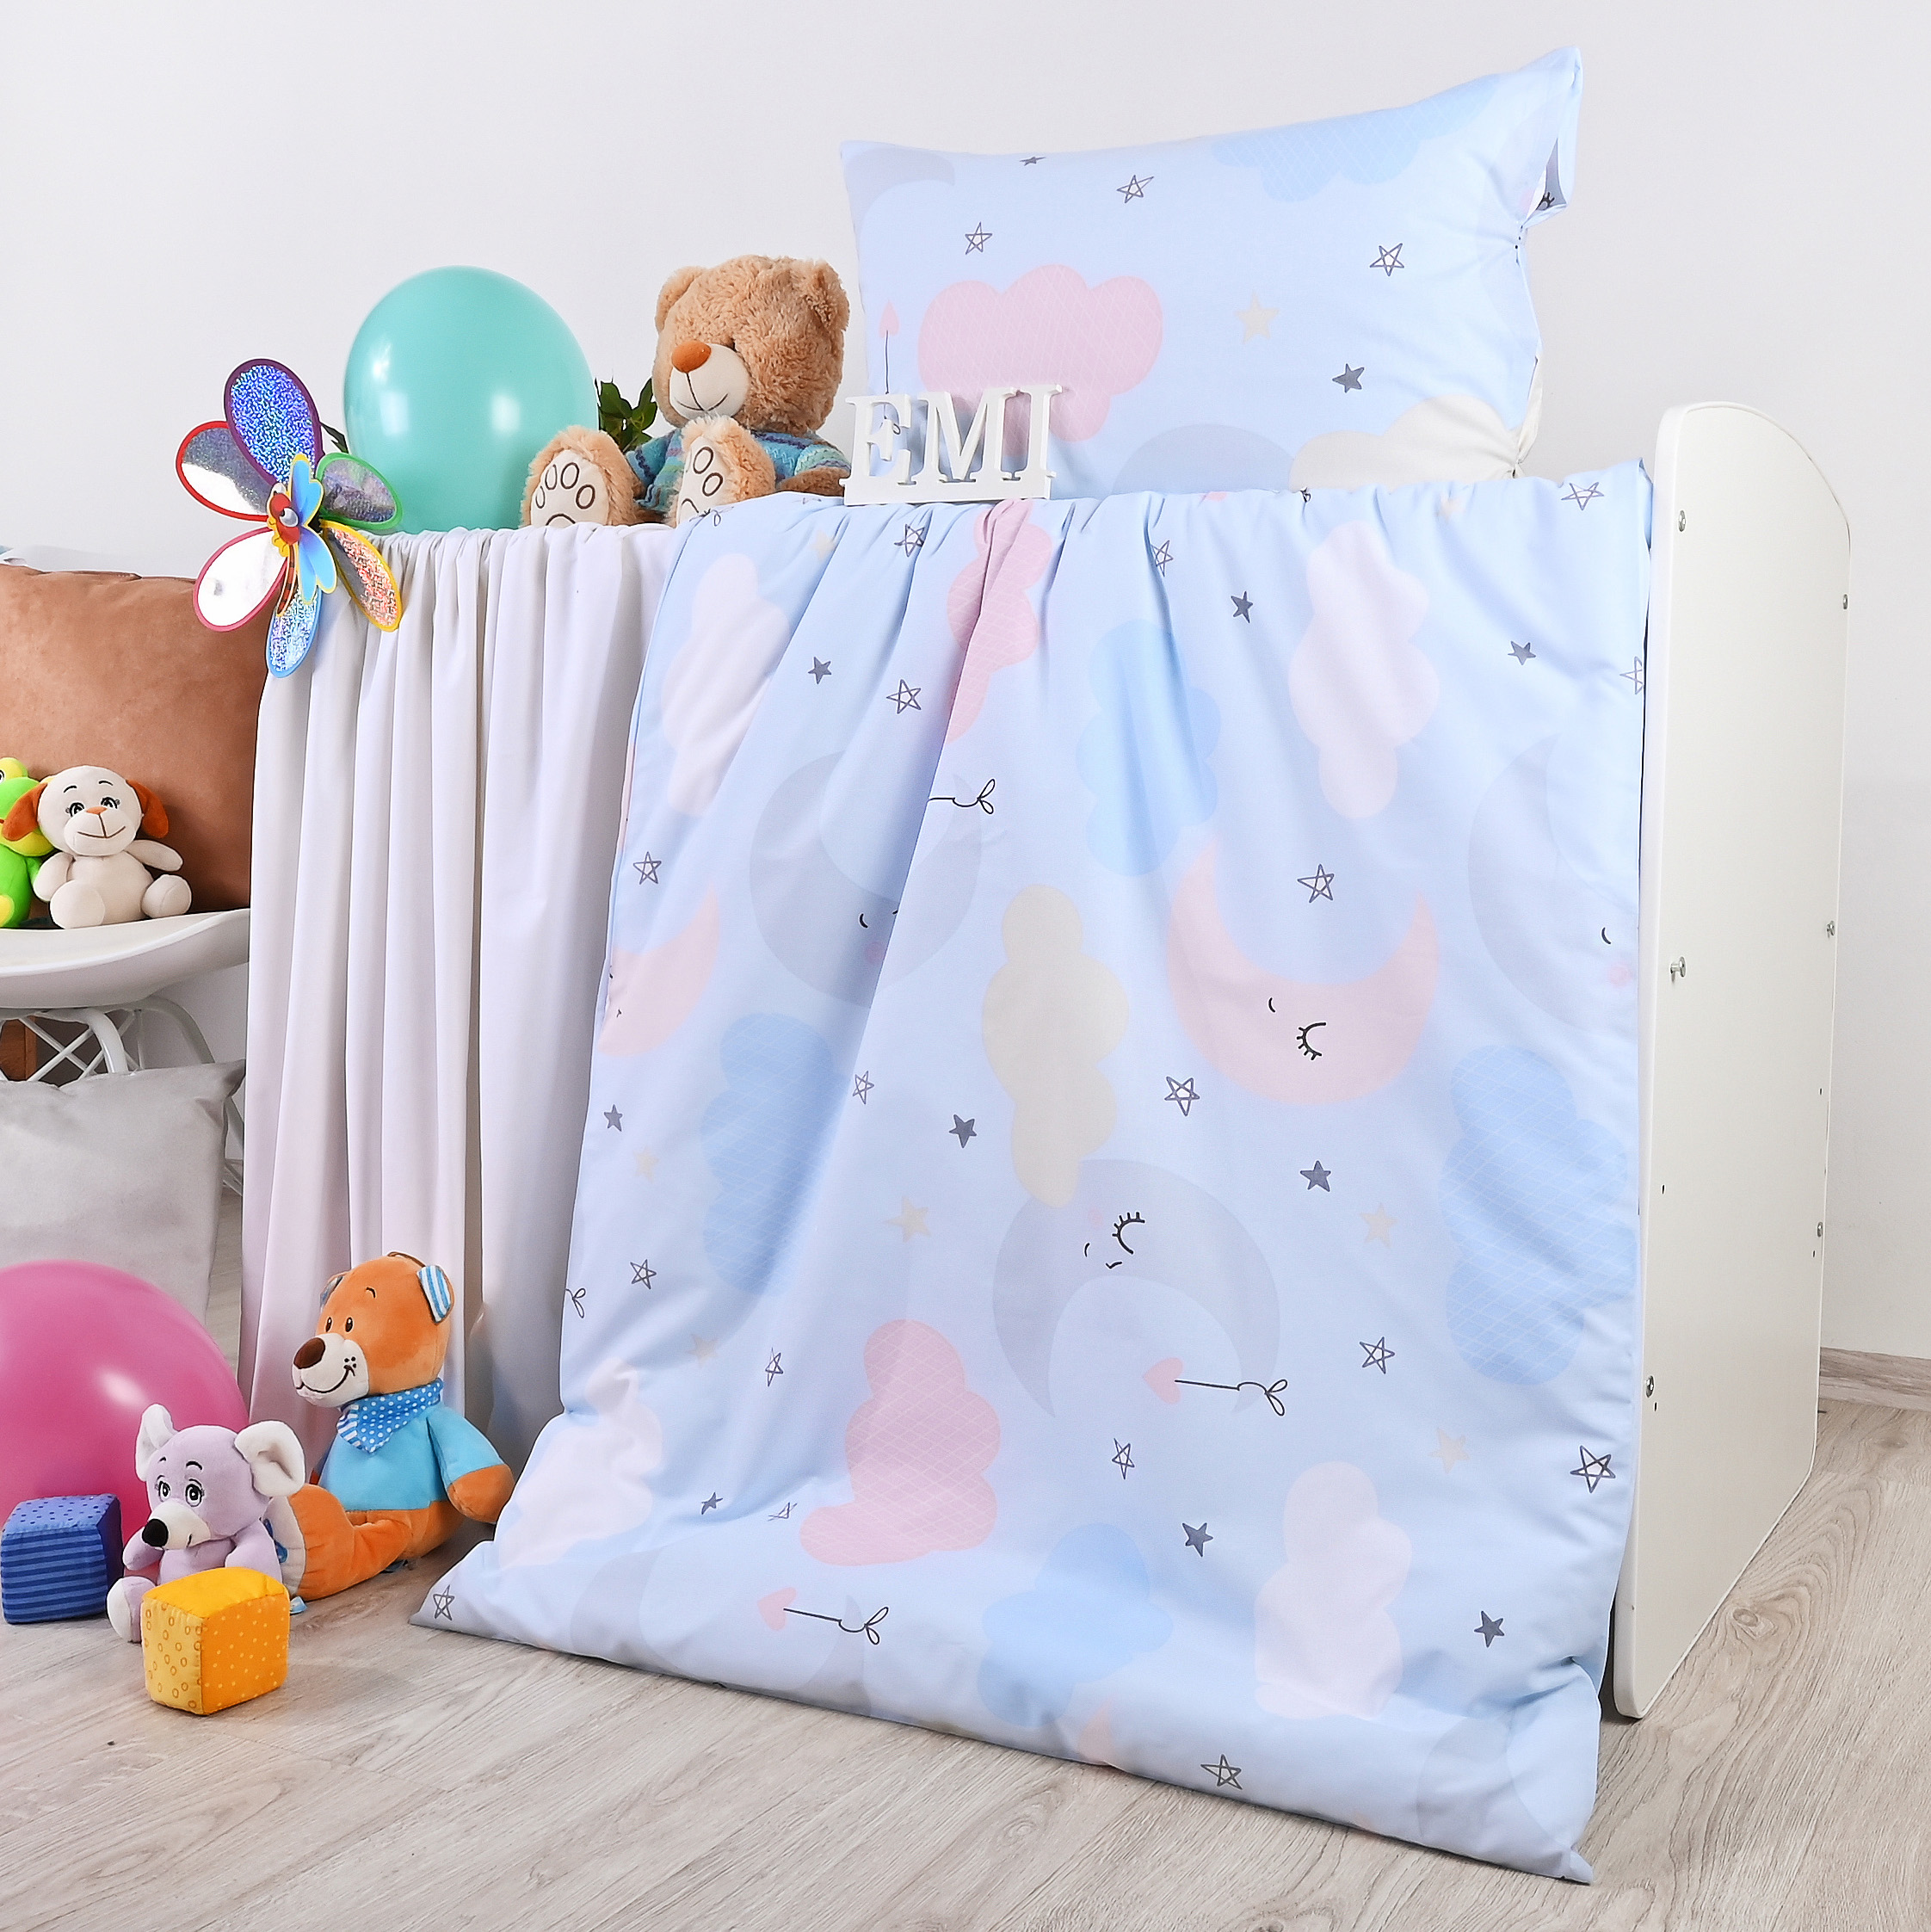 EMI detské posteľné obliečky bavlnené Heaven modré